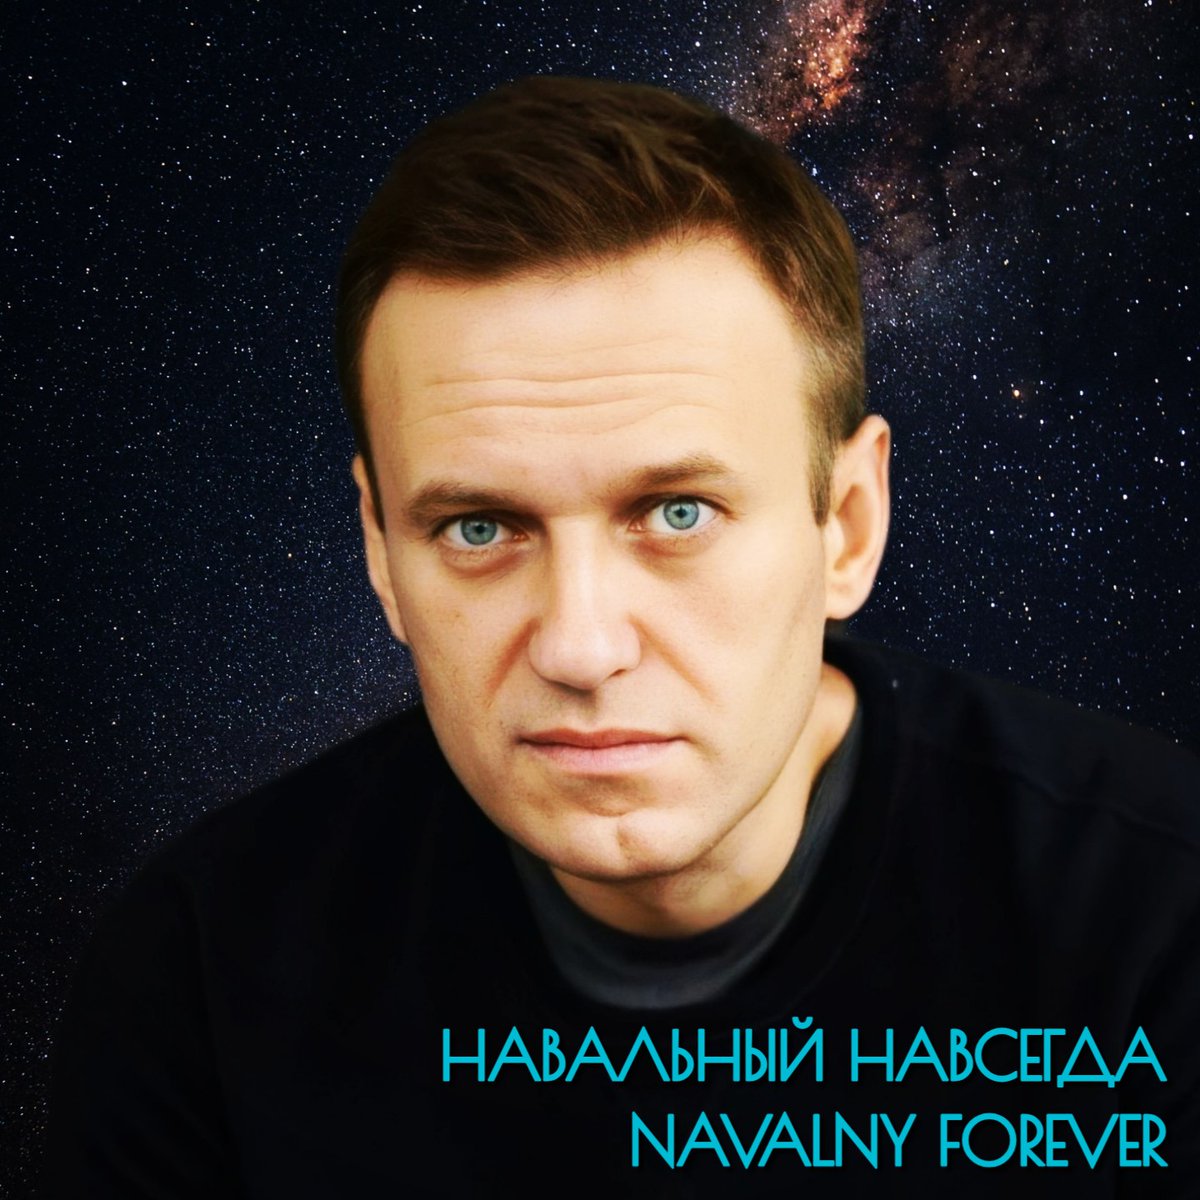 Алексей, ценой собственной жизни, смог осуществить очень важную вещь, которую трудно переоценить. Он сумел разбудить интерес к политике у огромнейшего количества людей, и особенно у молодёжи, за которой будущее. Навальный уже изменил этот мир. #НавальныйНавсегда #NavalnyForever